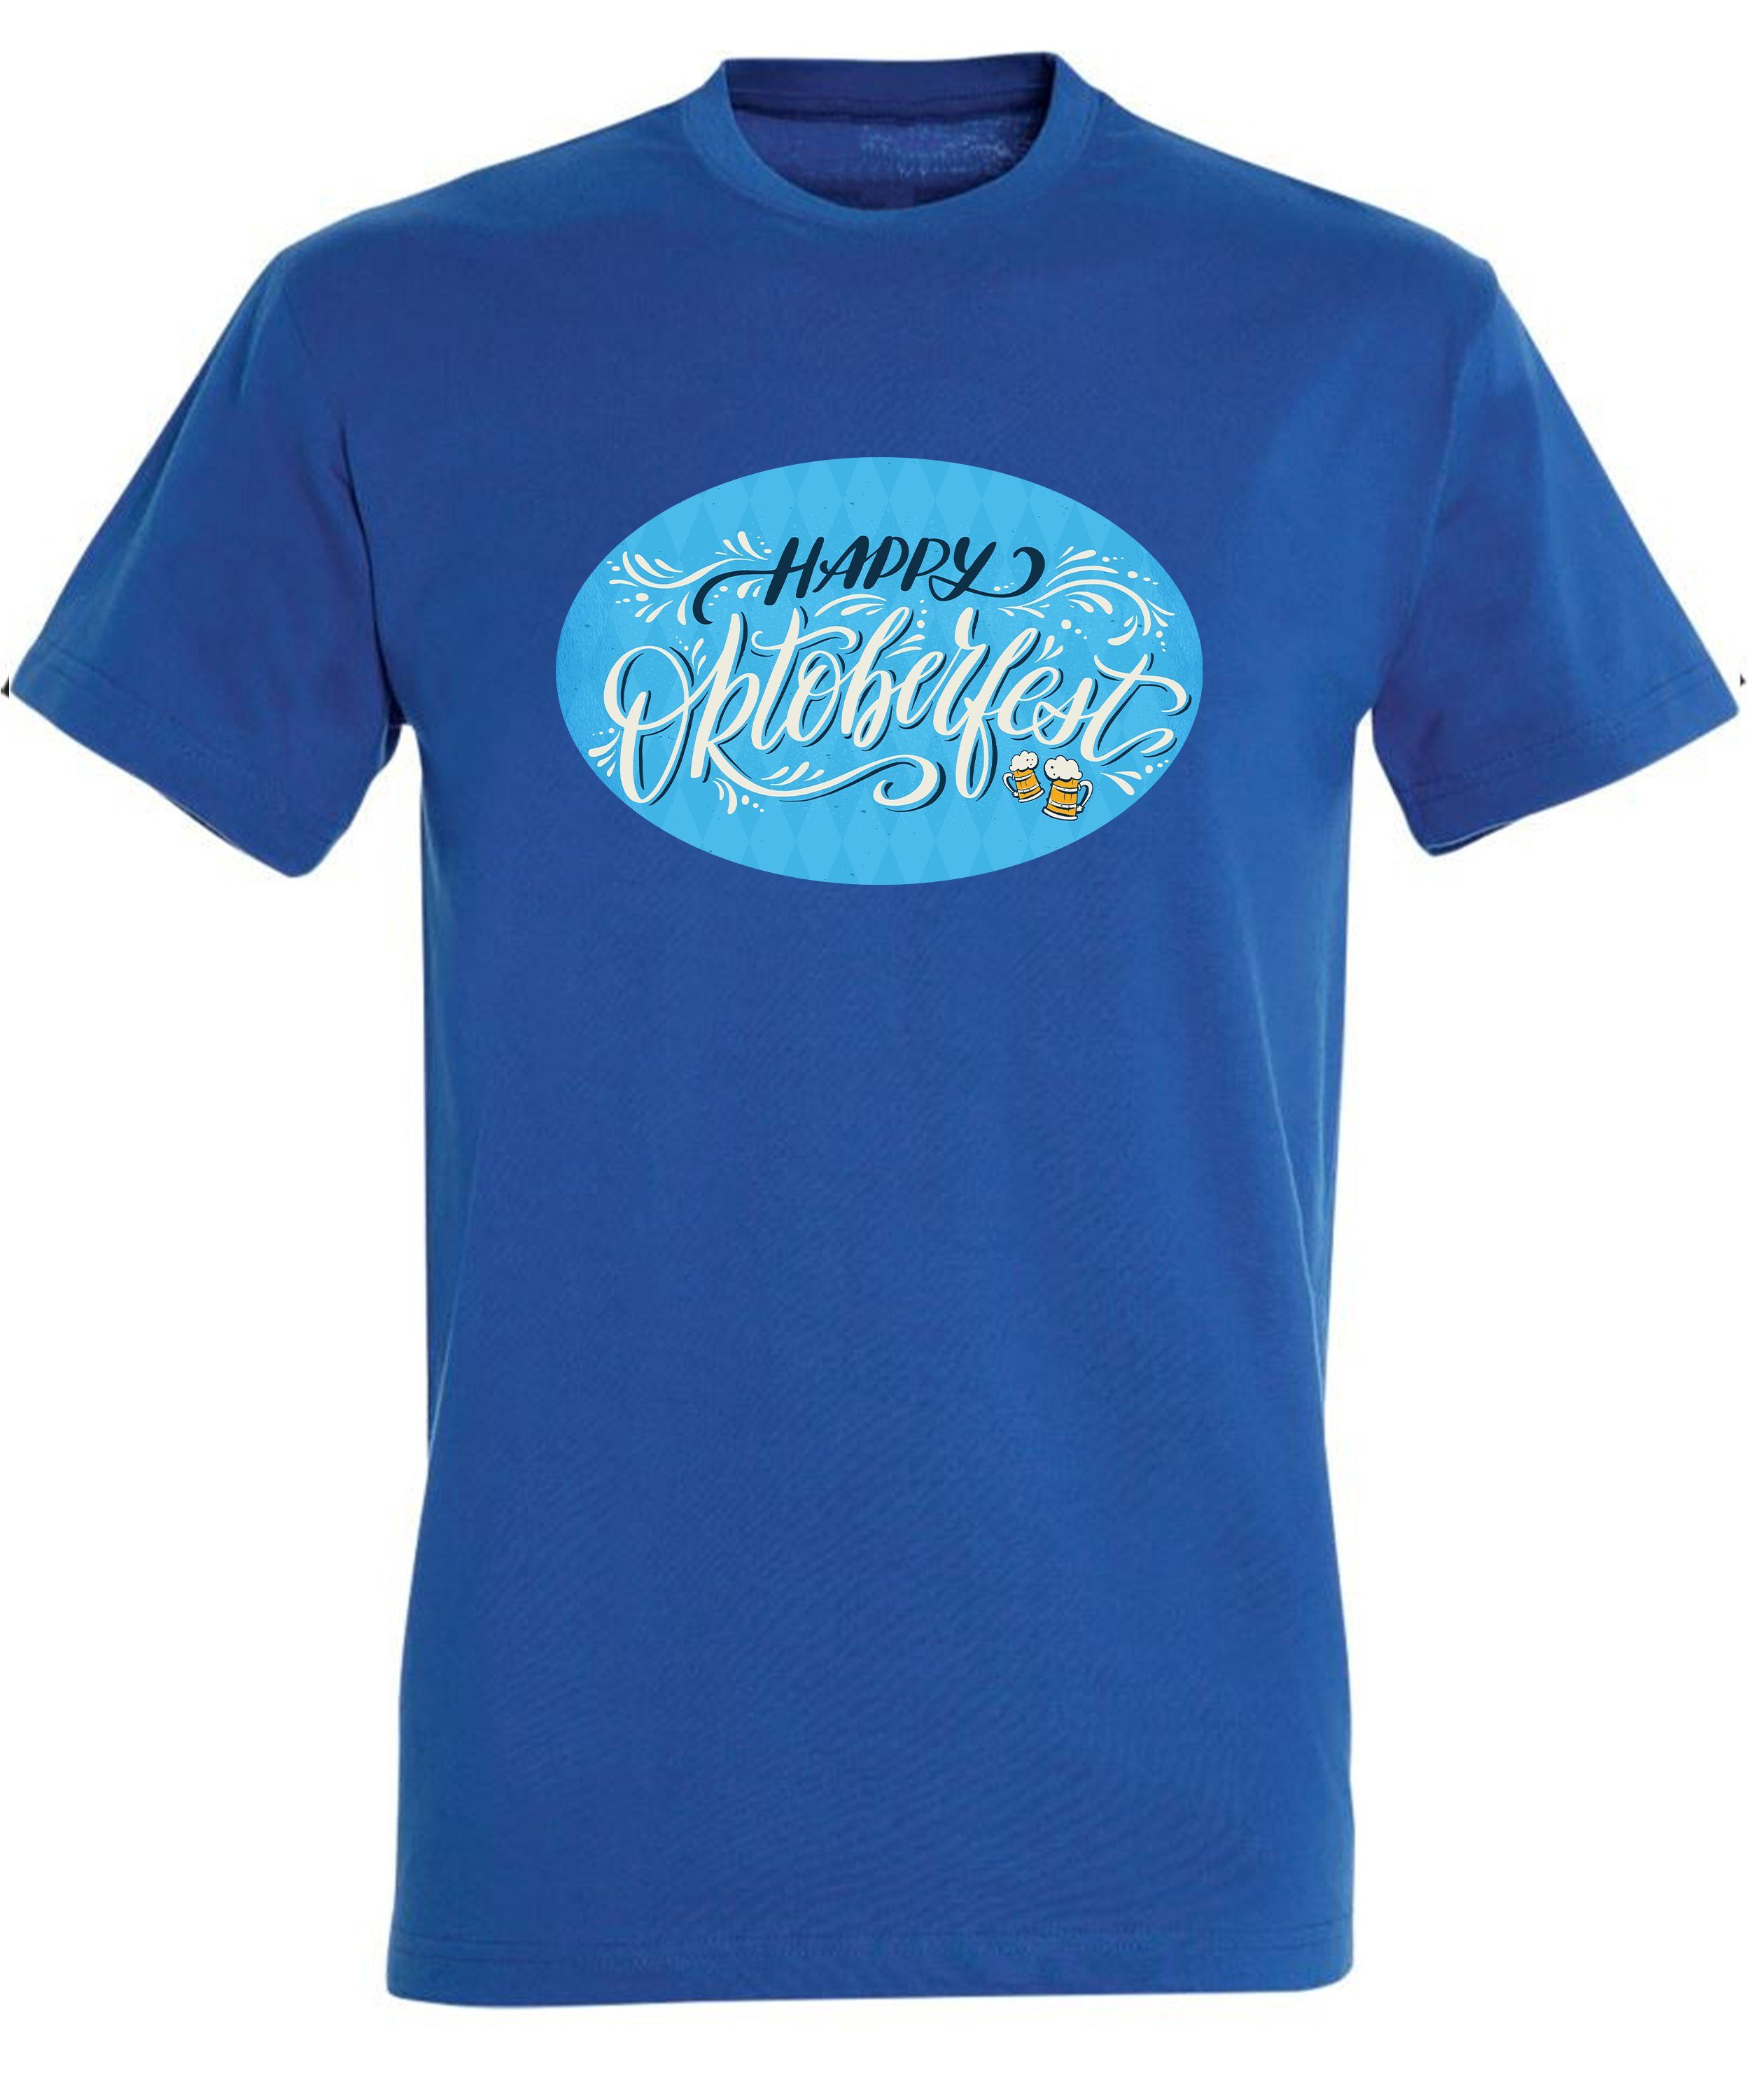 MyDesign24 T-Shirt Baumwollshirt royal T-Shirt - blau Fit, Aufdruck Shirt Party Oktoberfest mit Regular Herren i322 Trinkshirt